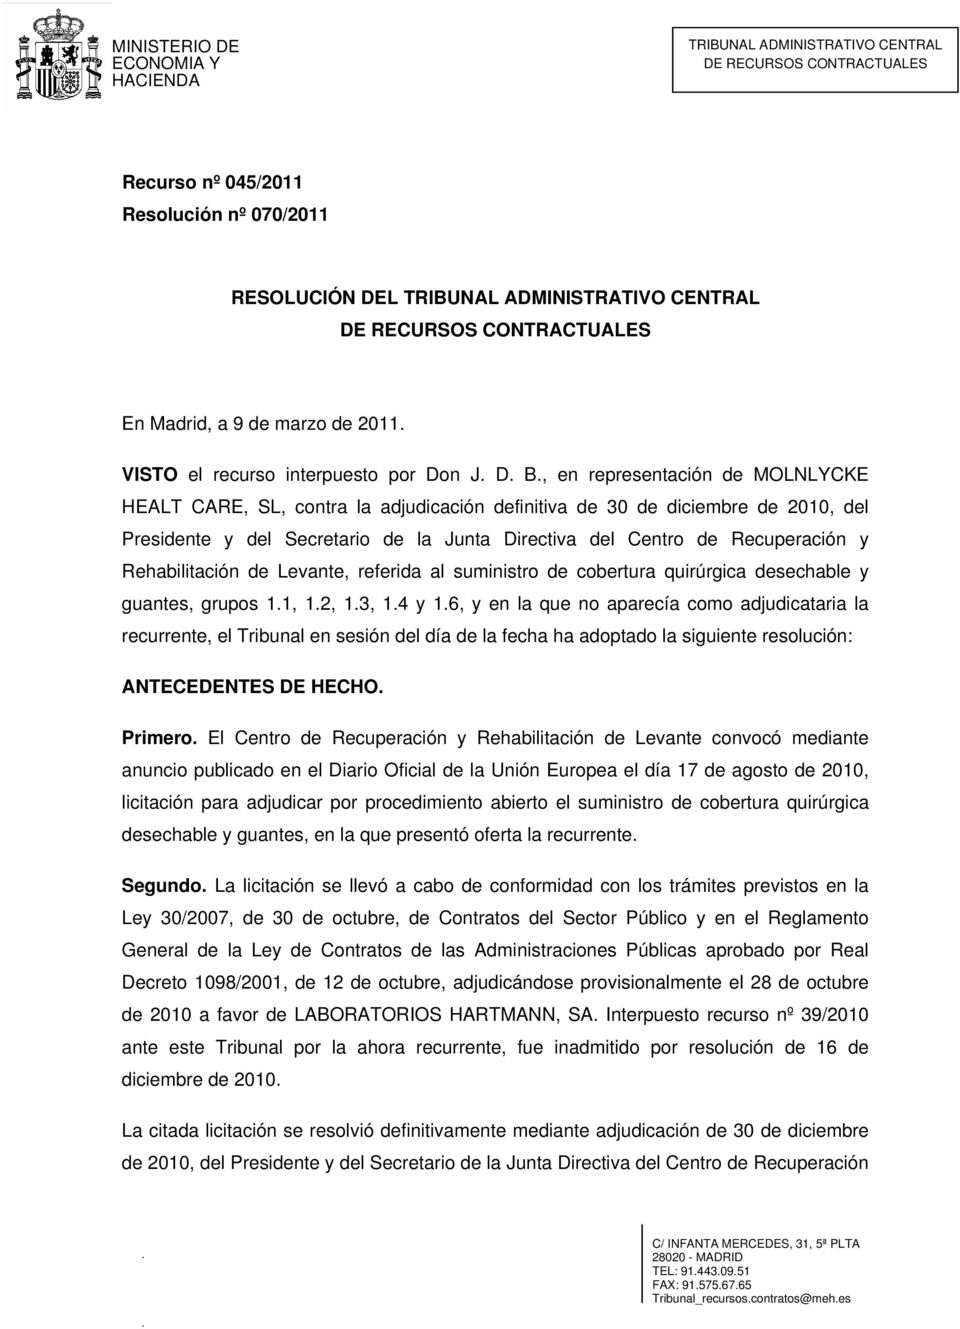 Rehabilitación de Levante, referida al suministro de cobertura quirúrgica desechable y guantes, grupos 1.1, 1.2, 1.3, 1.4 y 1.